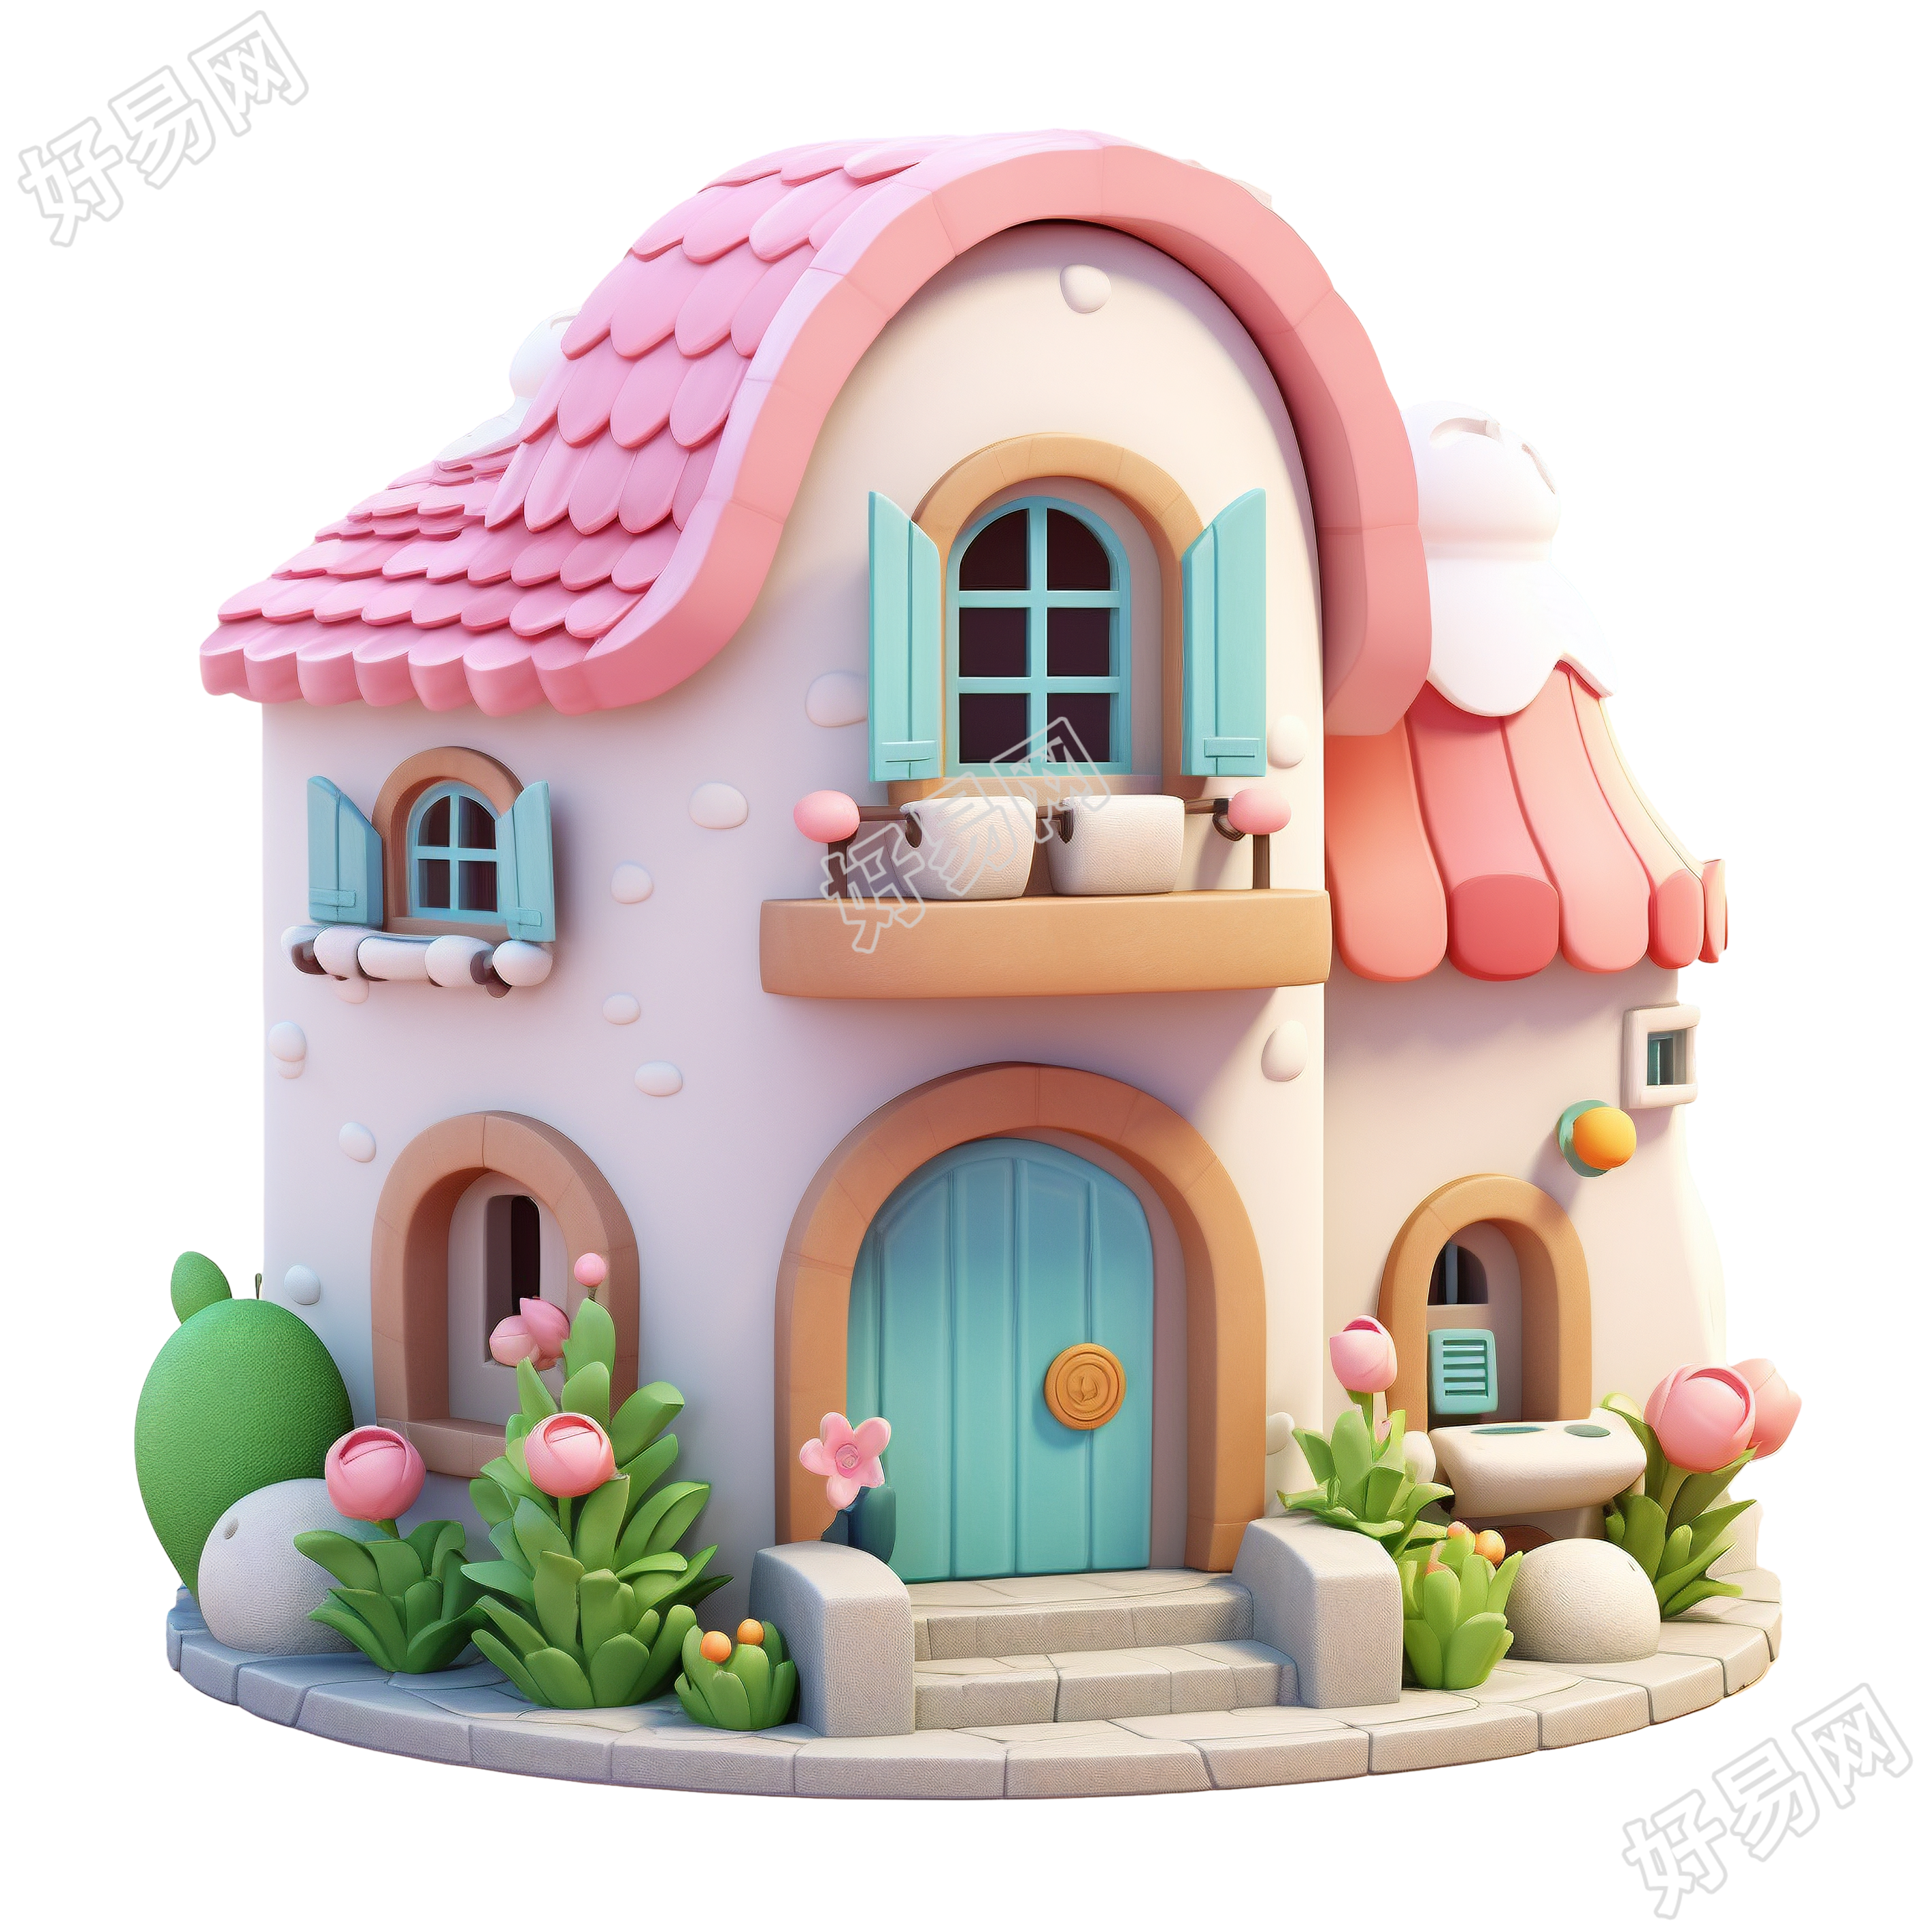 3D粉色小房子插图